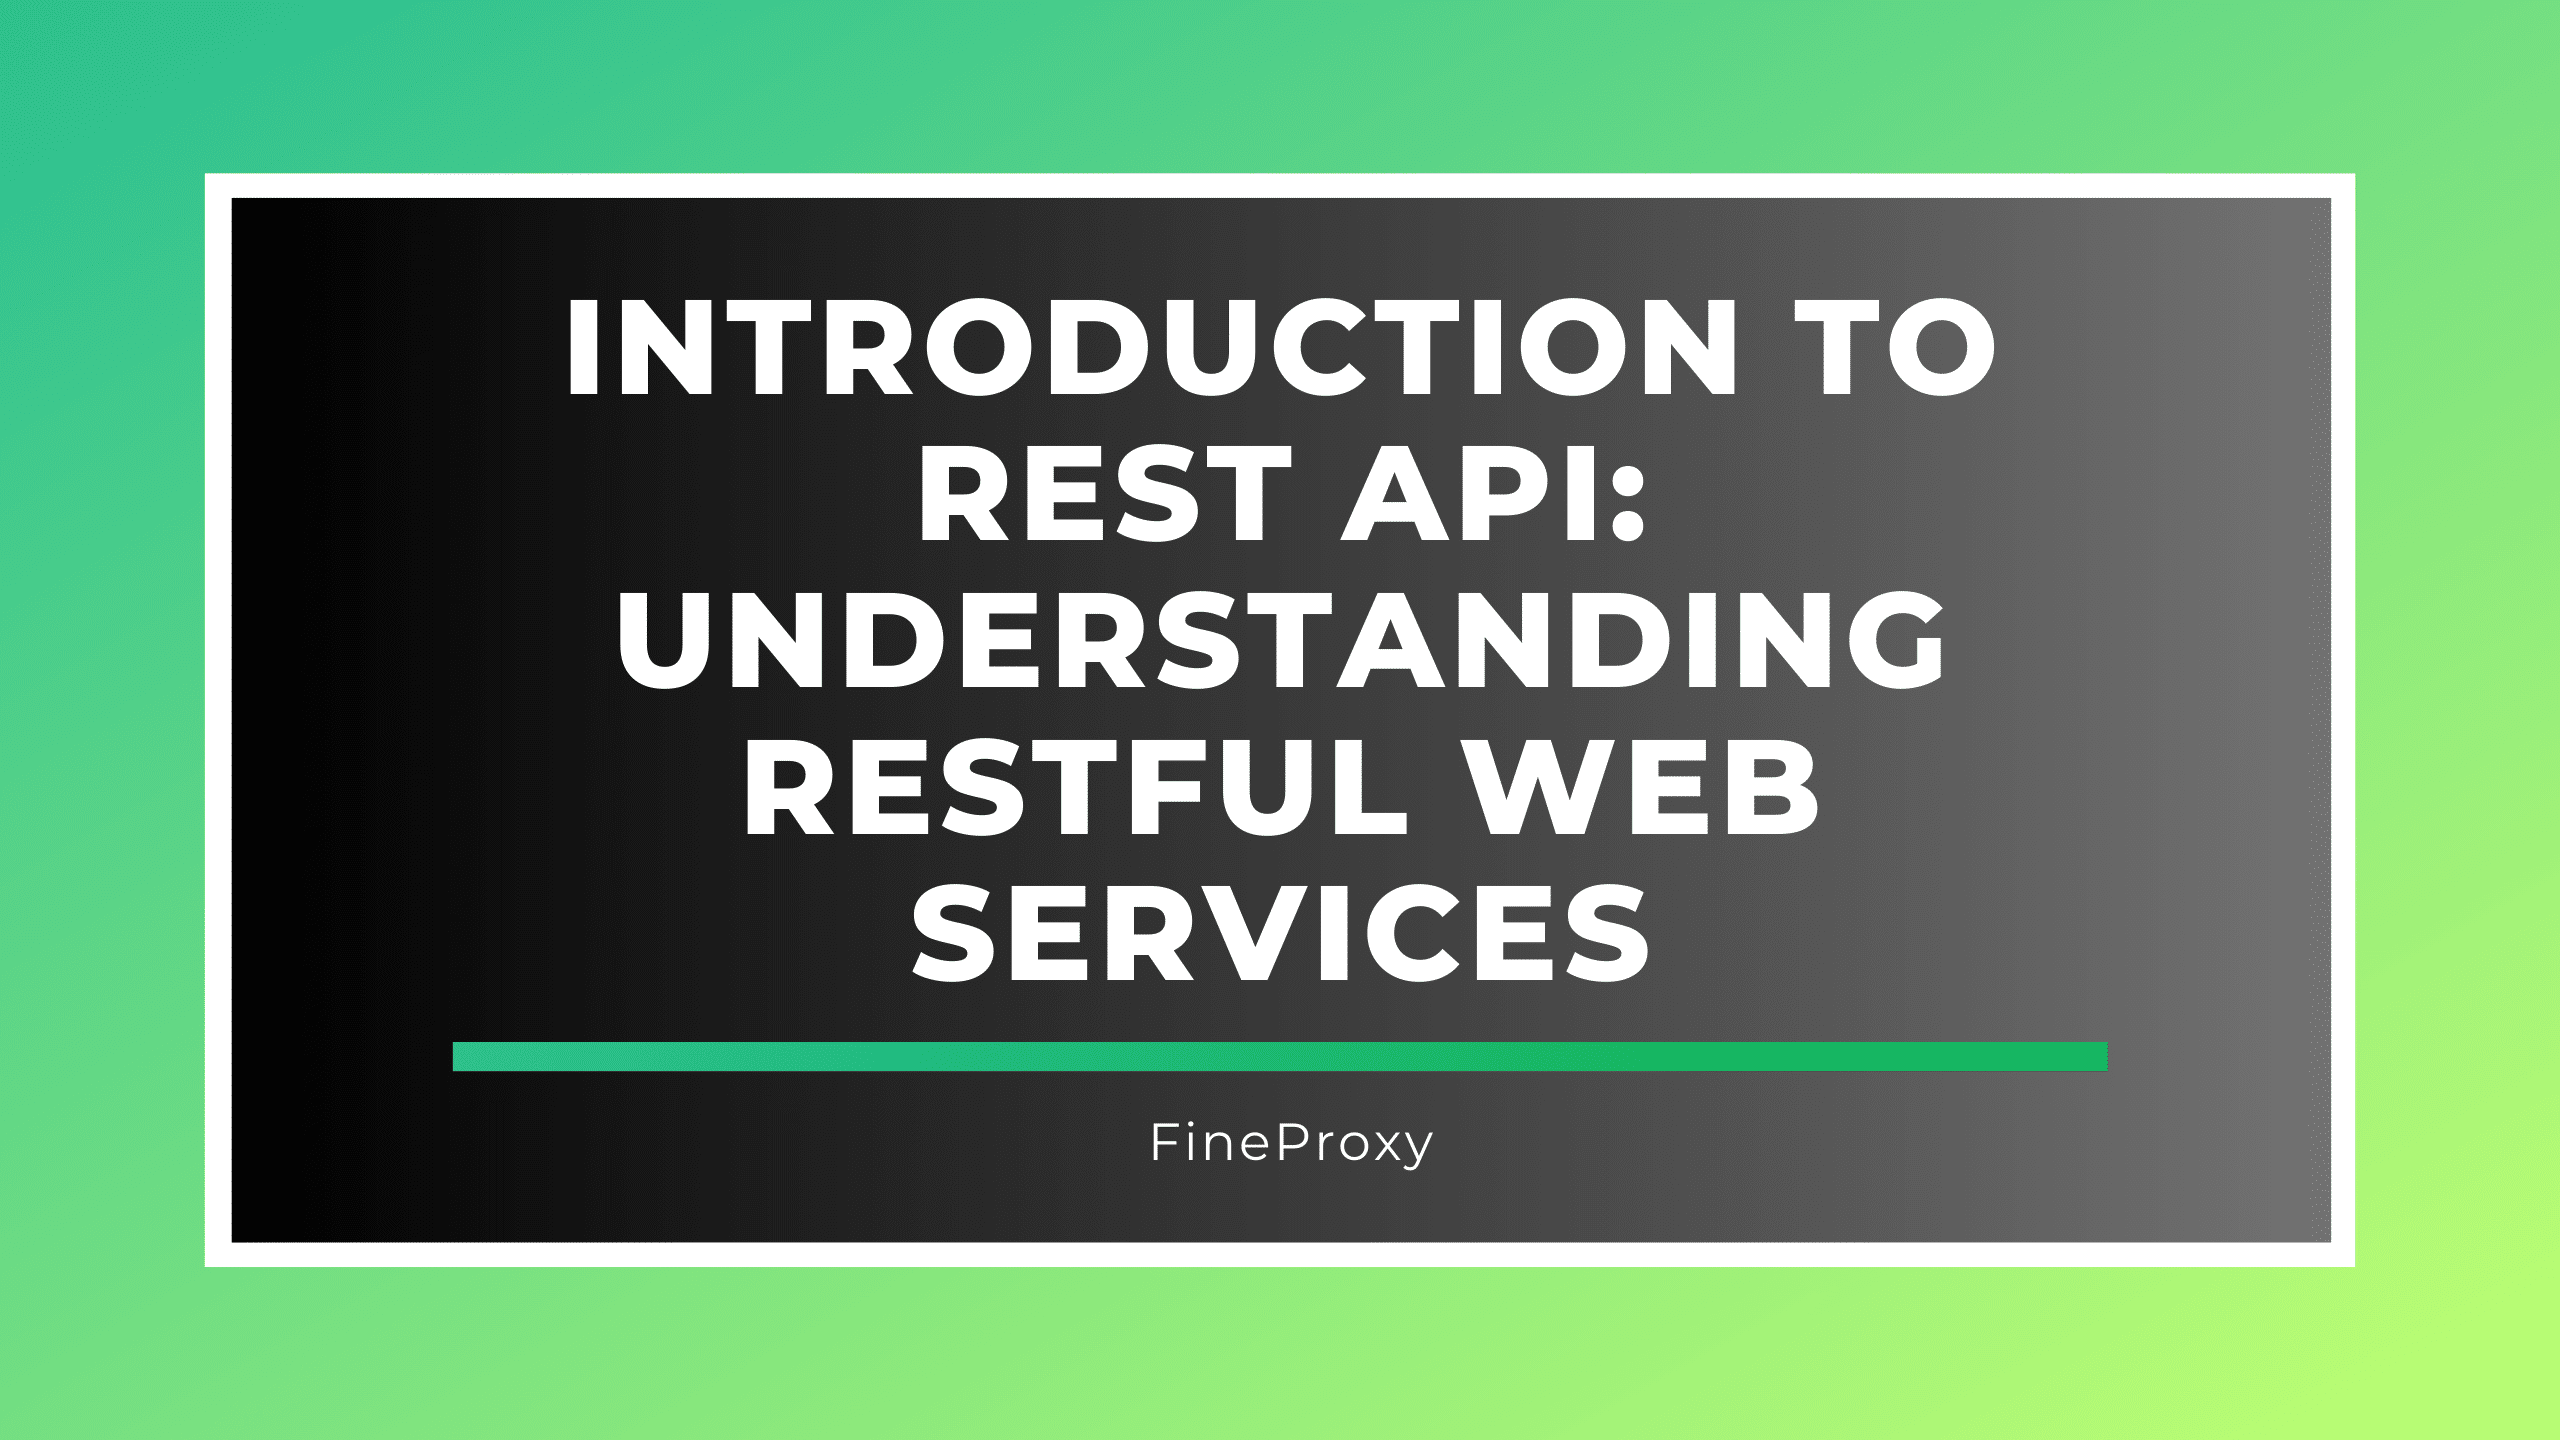 Wprowadzenie do REST API: Zrozumienie usług internetowych RESTful